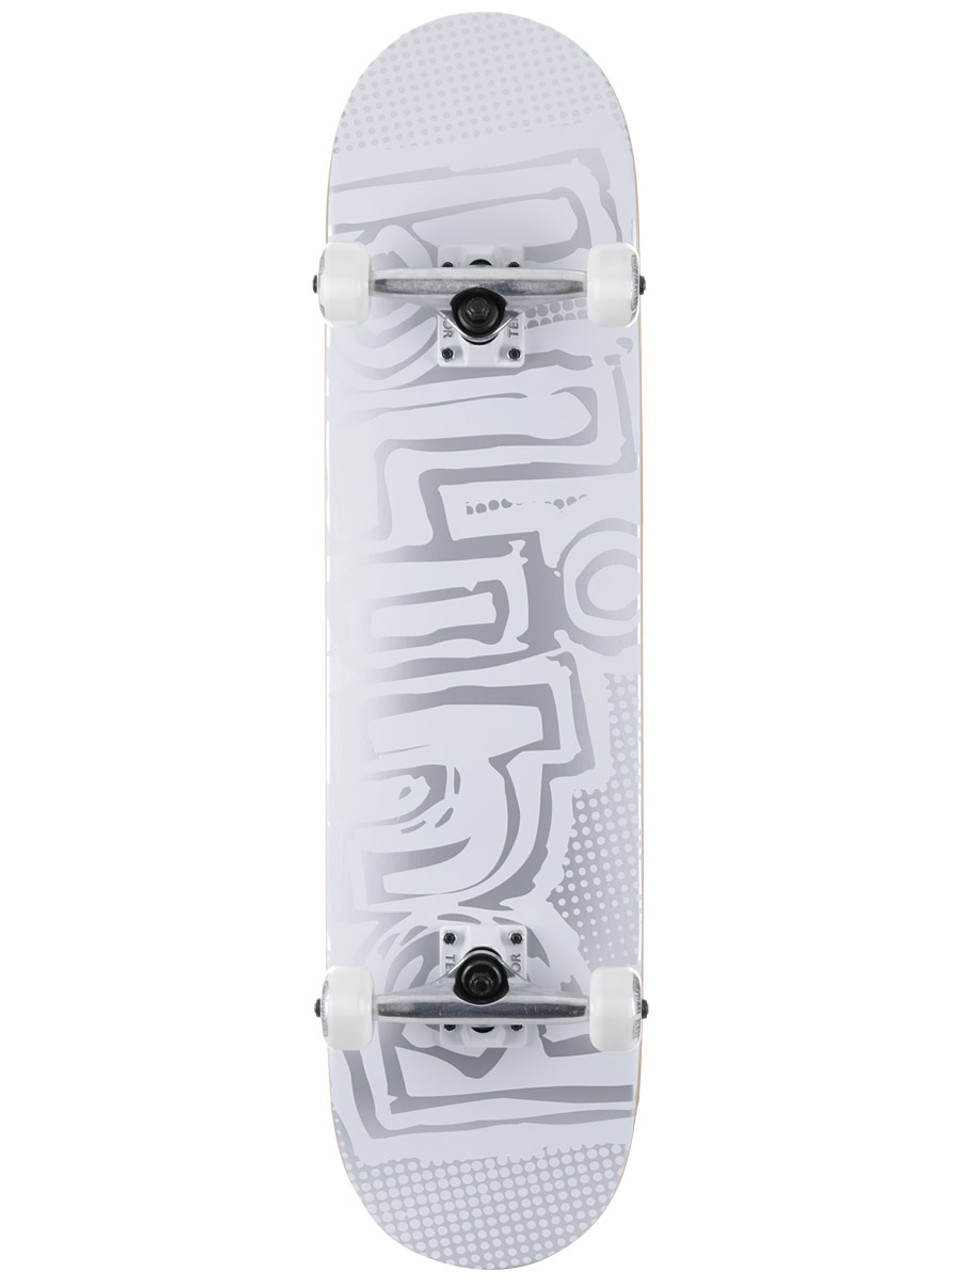 Blind OG Matte Skateboard Complete White 7.875